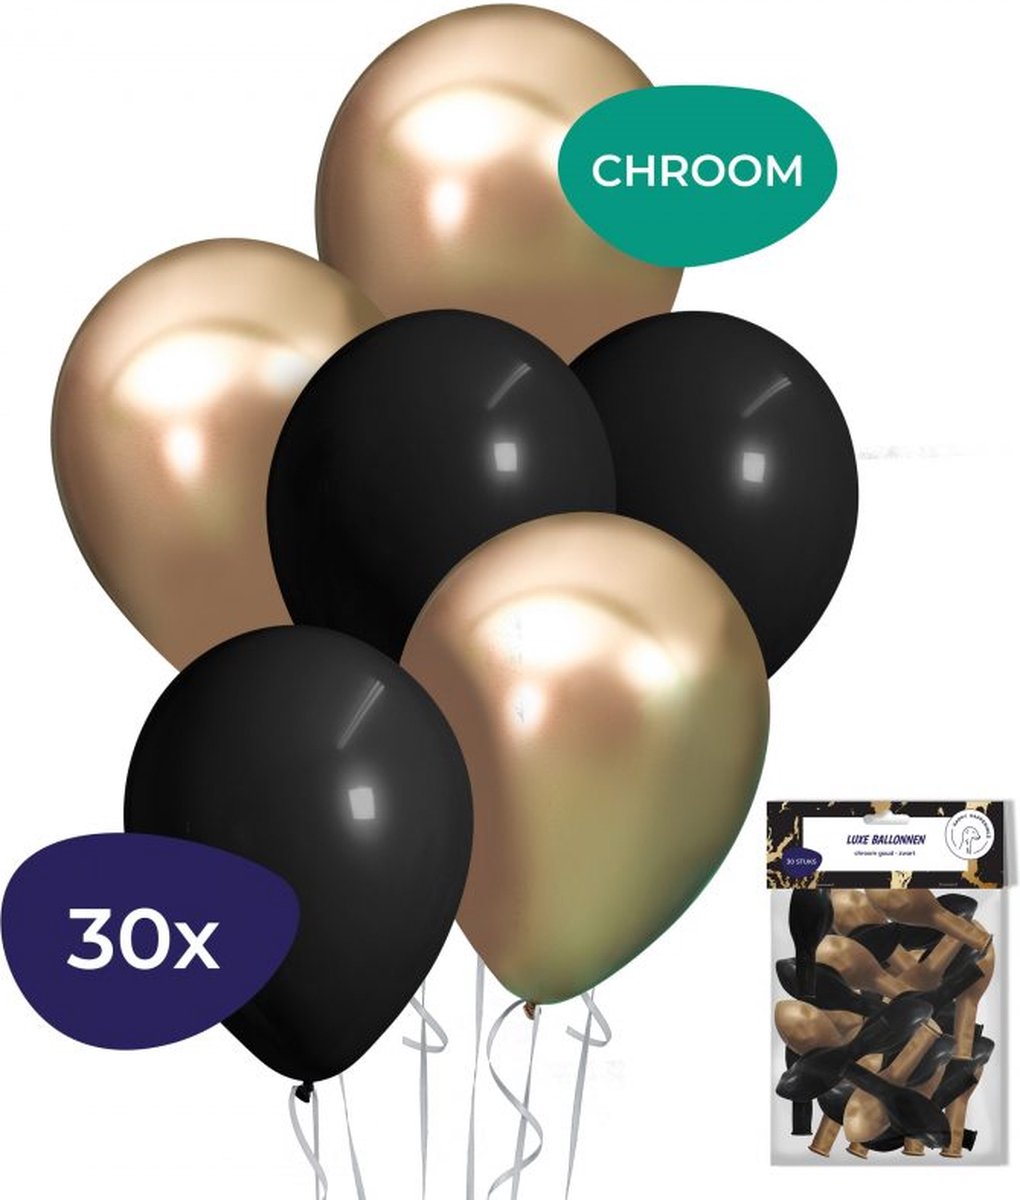 Ballonnen Goud Zwart 30x